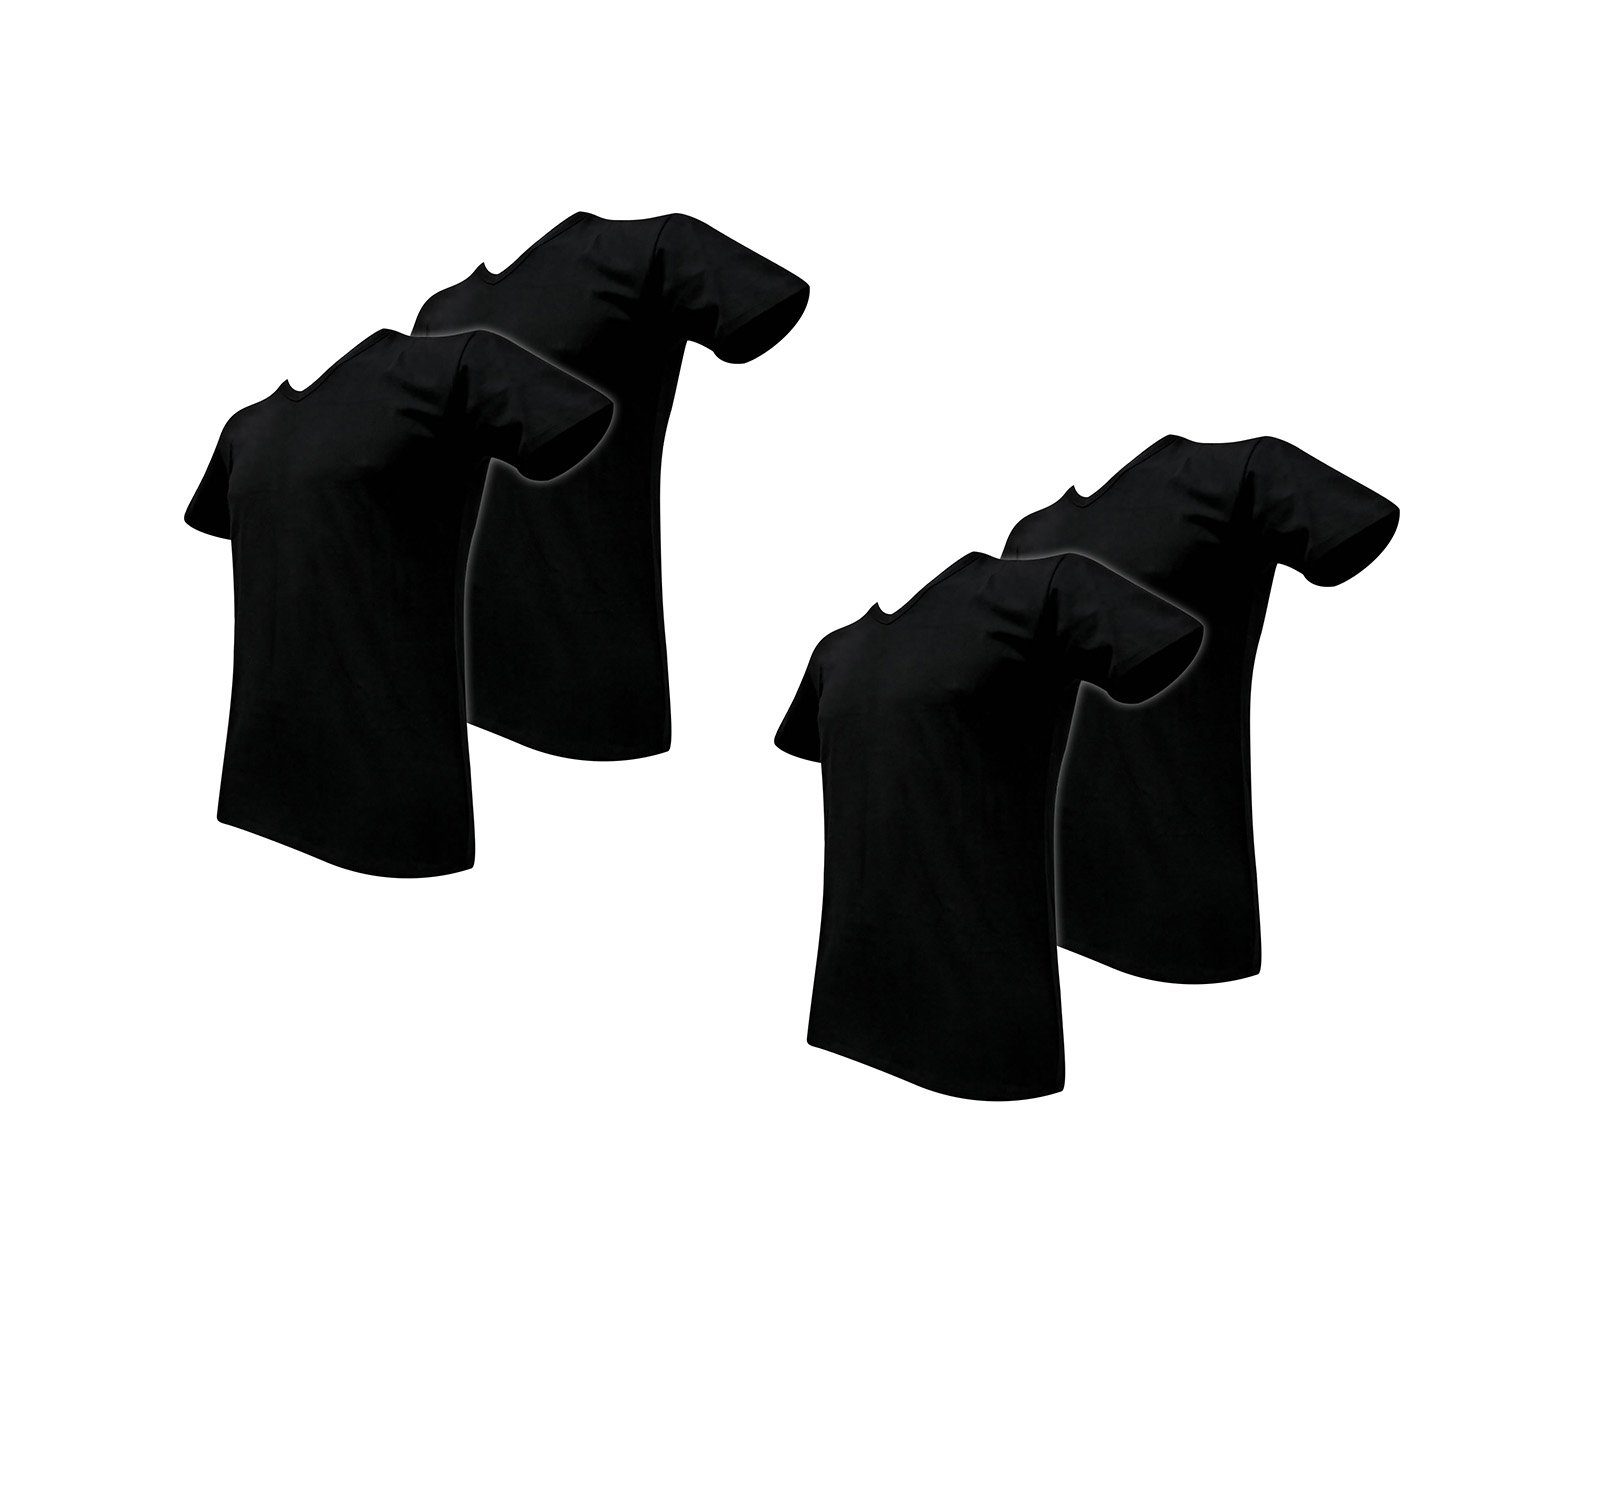 Sympatico T-Shirt V-NECK Herren Shirt Super Soft 4er Pack 4 Stück ein Preis (4-er Packung, Sparpack, 4er-Pack, 4 Stück ein Preis) schwarz